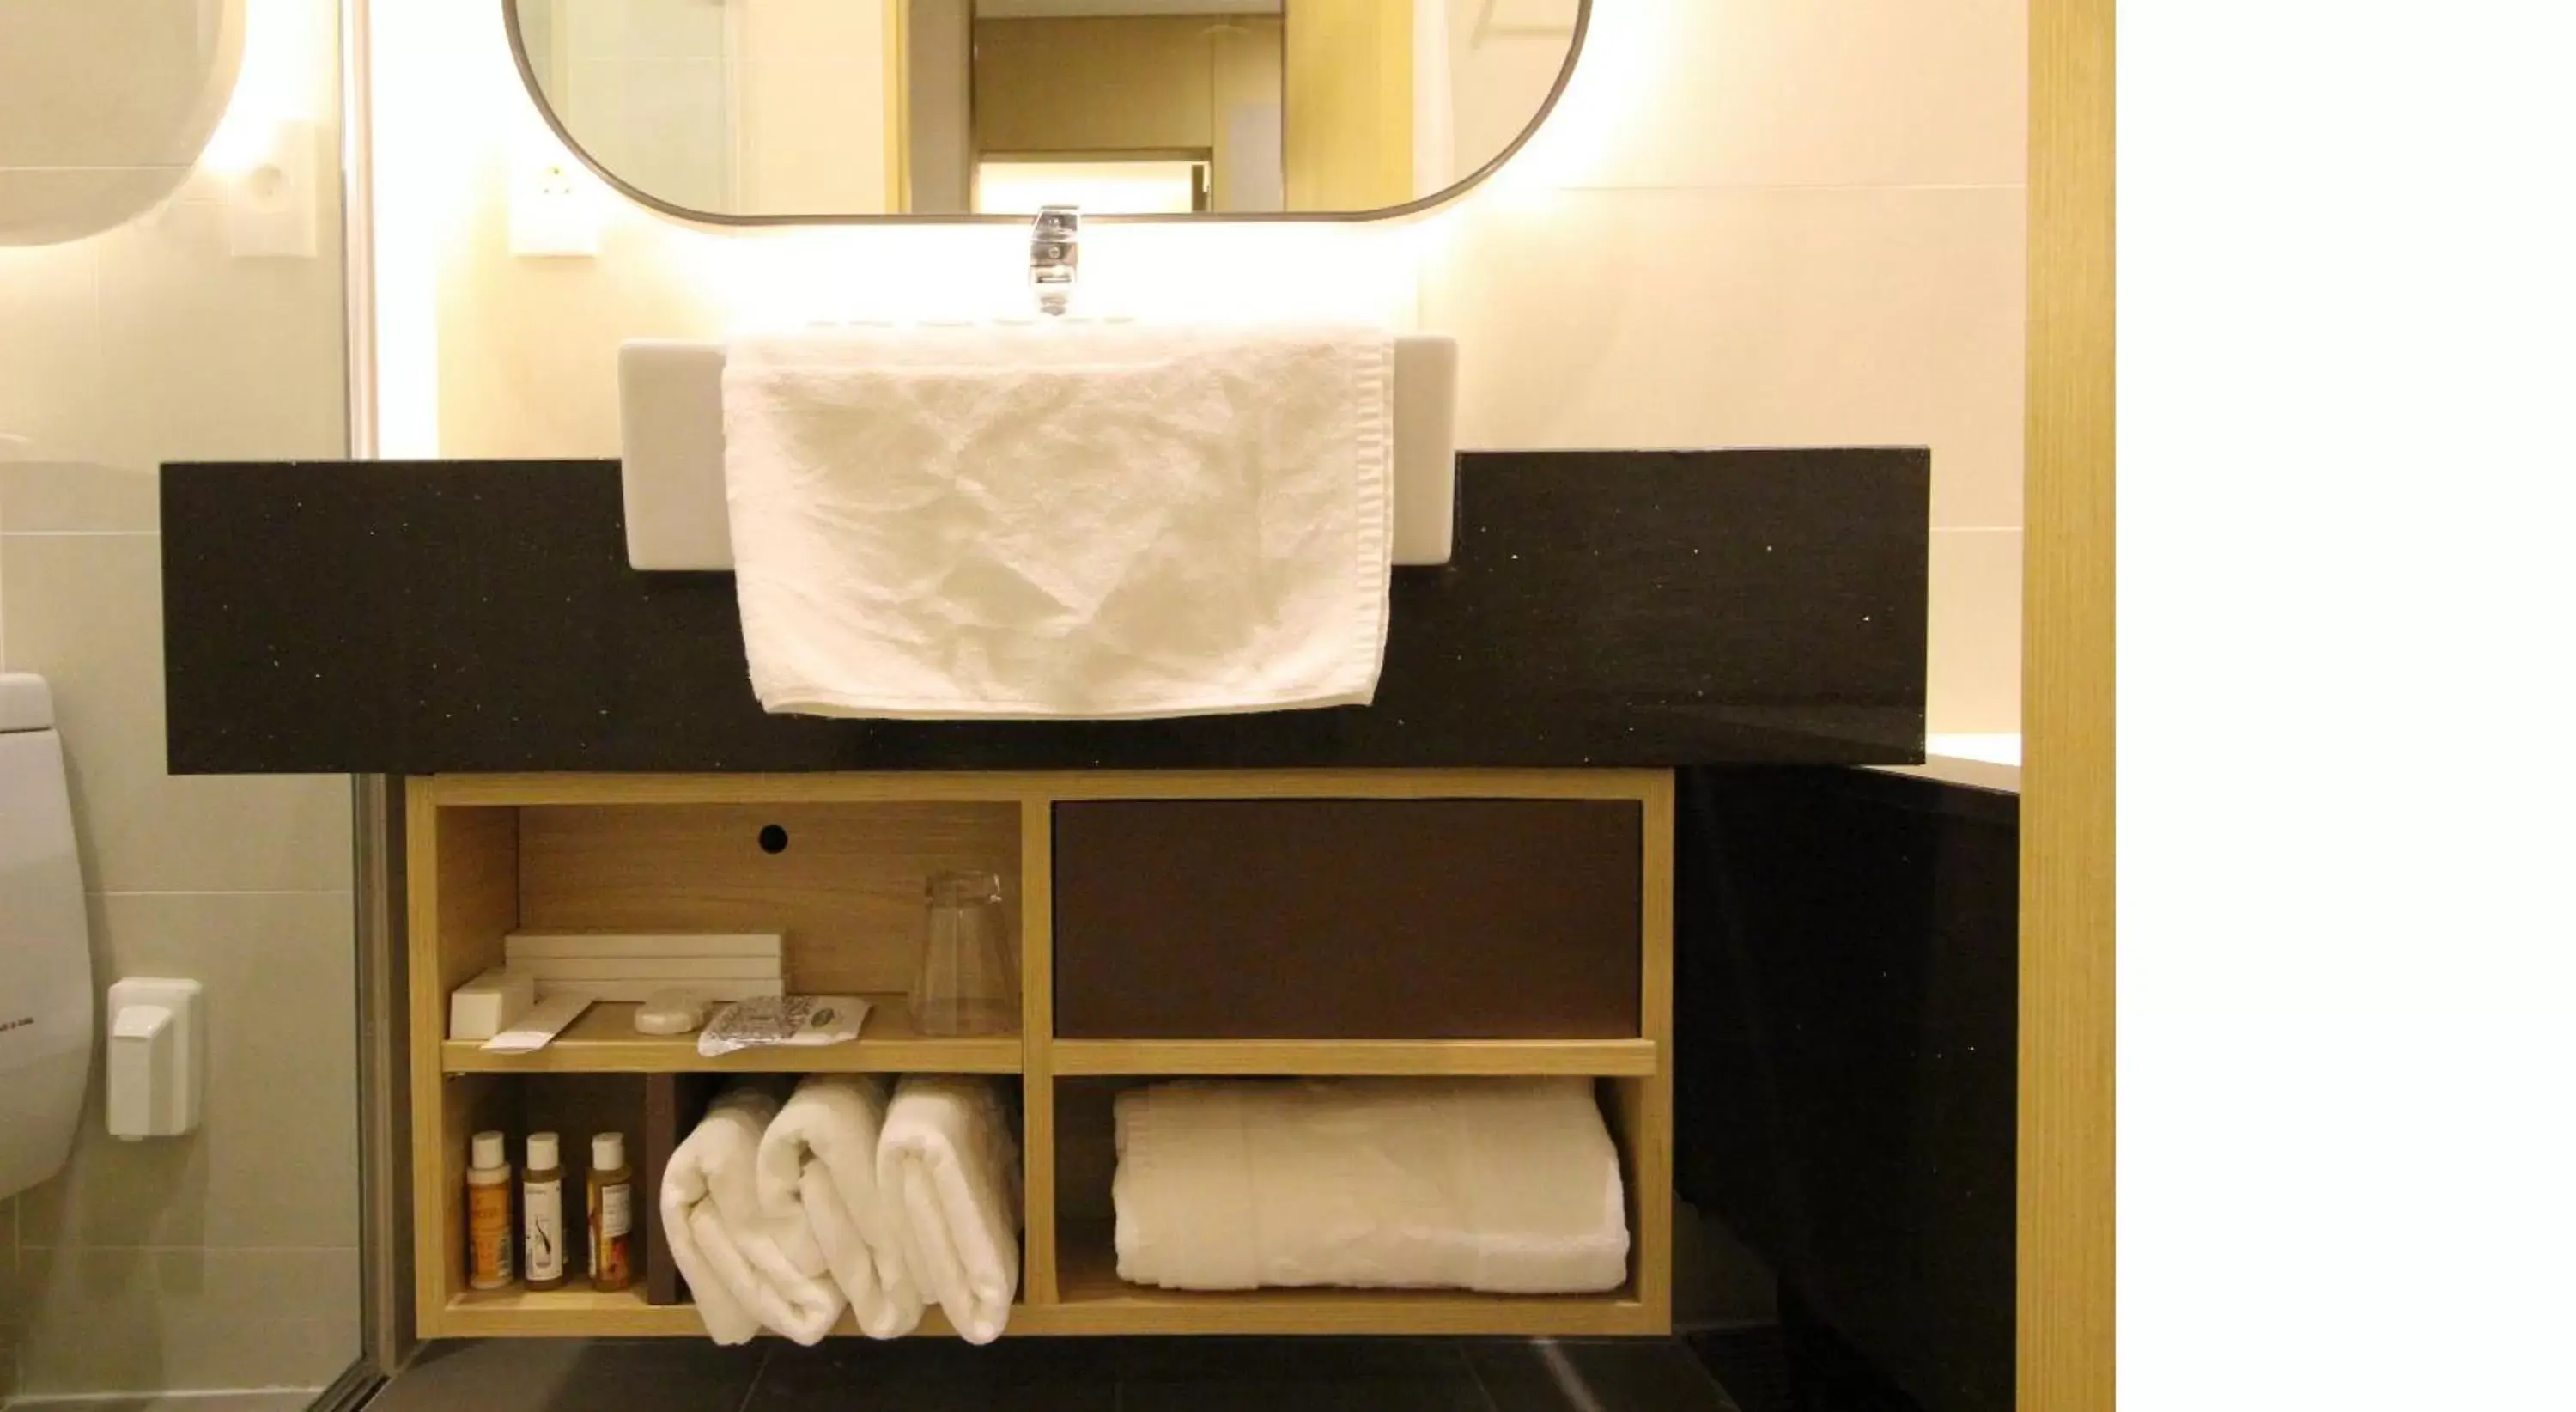 Area and facilities, Bathroom in Hotel Migliore Seoul